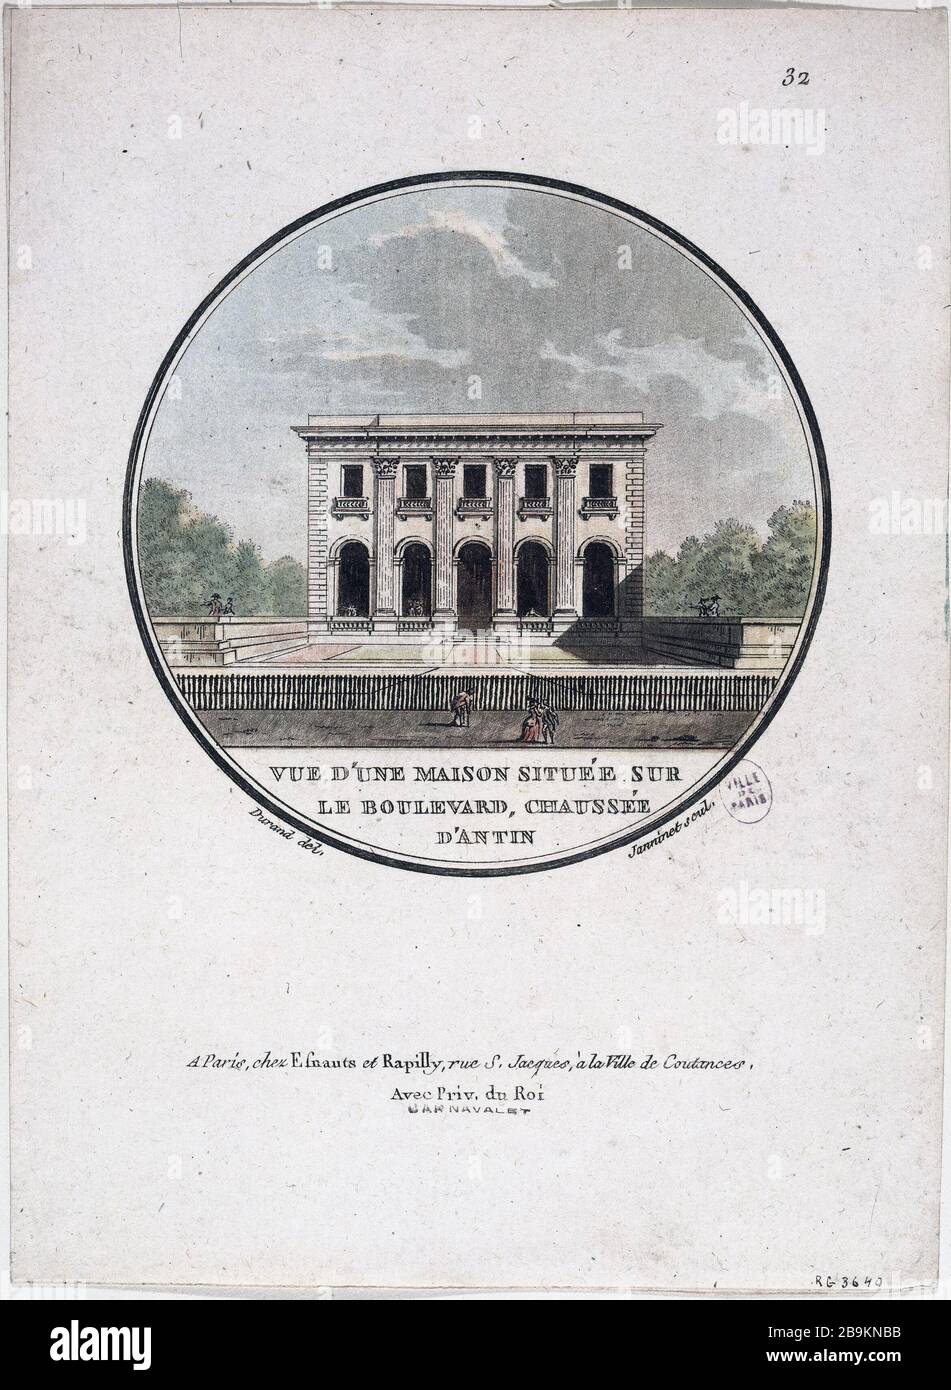 PER UNA CASA SITUATA AL PIANO BOULEVARD D'ANTIN JEAN-FRANÇOIS JANINET (1752-1814). 'Vue d'une maison située sur le boulevard, Chaussée d'Antin'. Gravure. Parigi, musée Carnavalet. Foto Stock